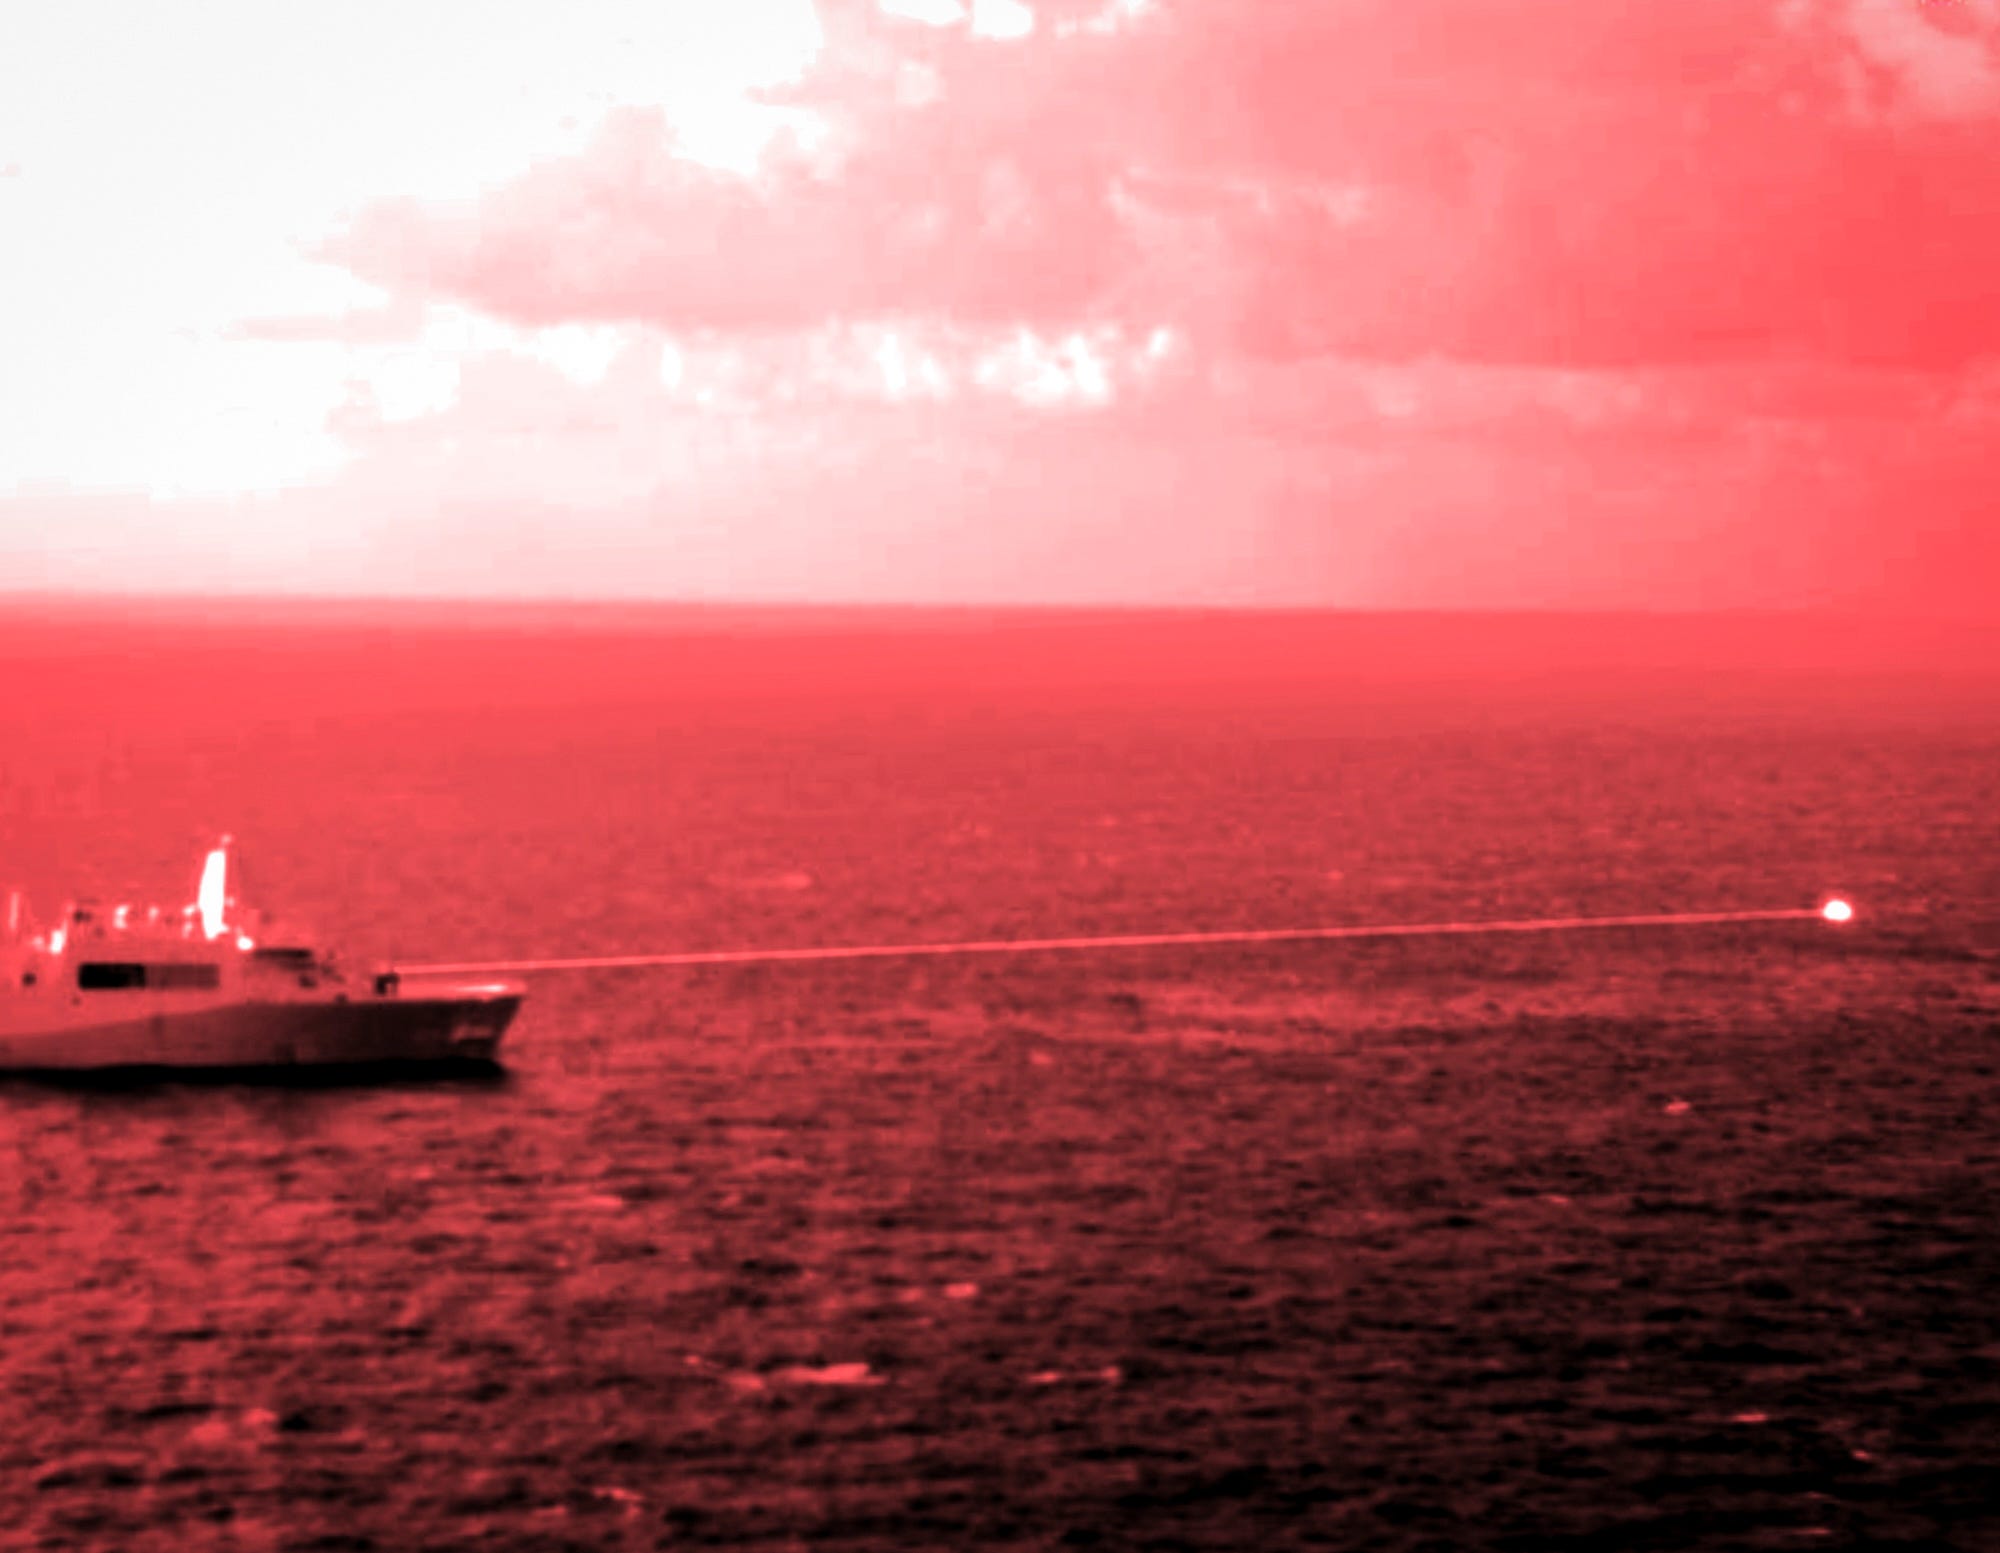 Das amphibische Transportdockschiff USS Portland feuert eine hochenergetische Laserwaffe auf ein Trainingsziel.